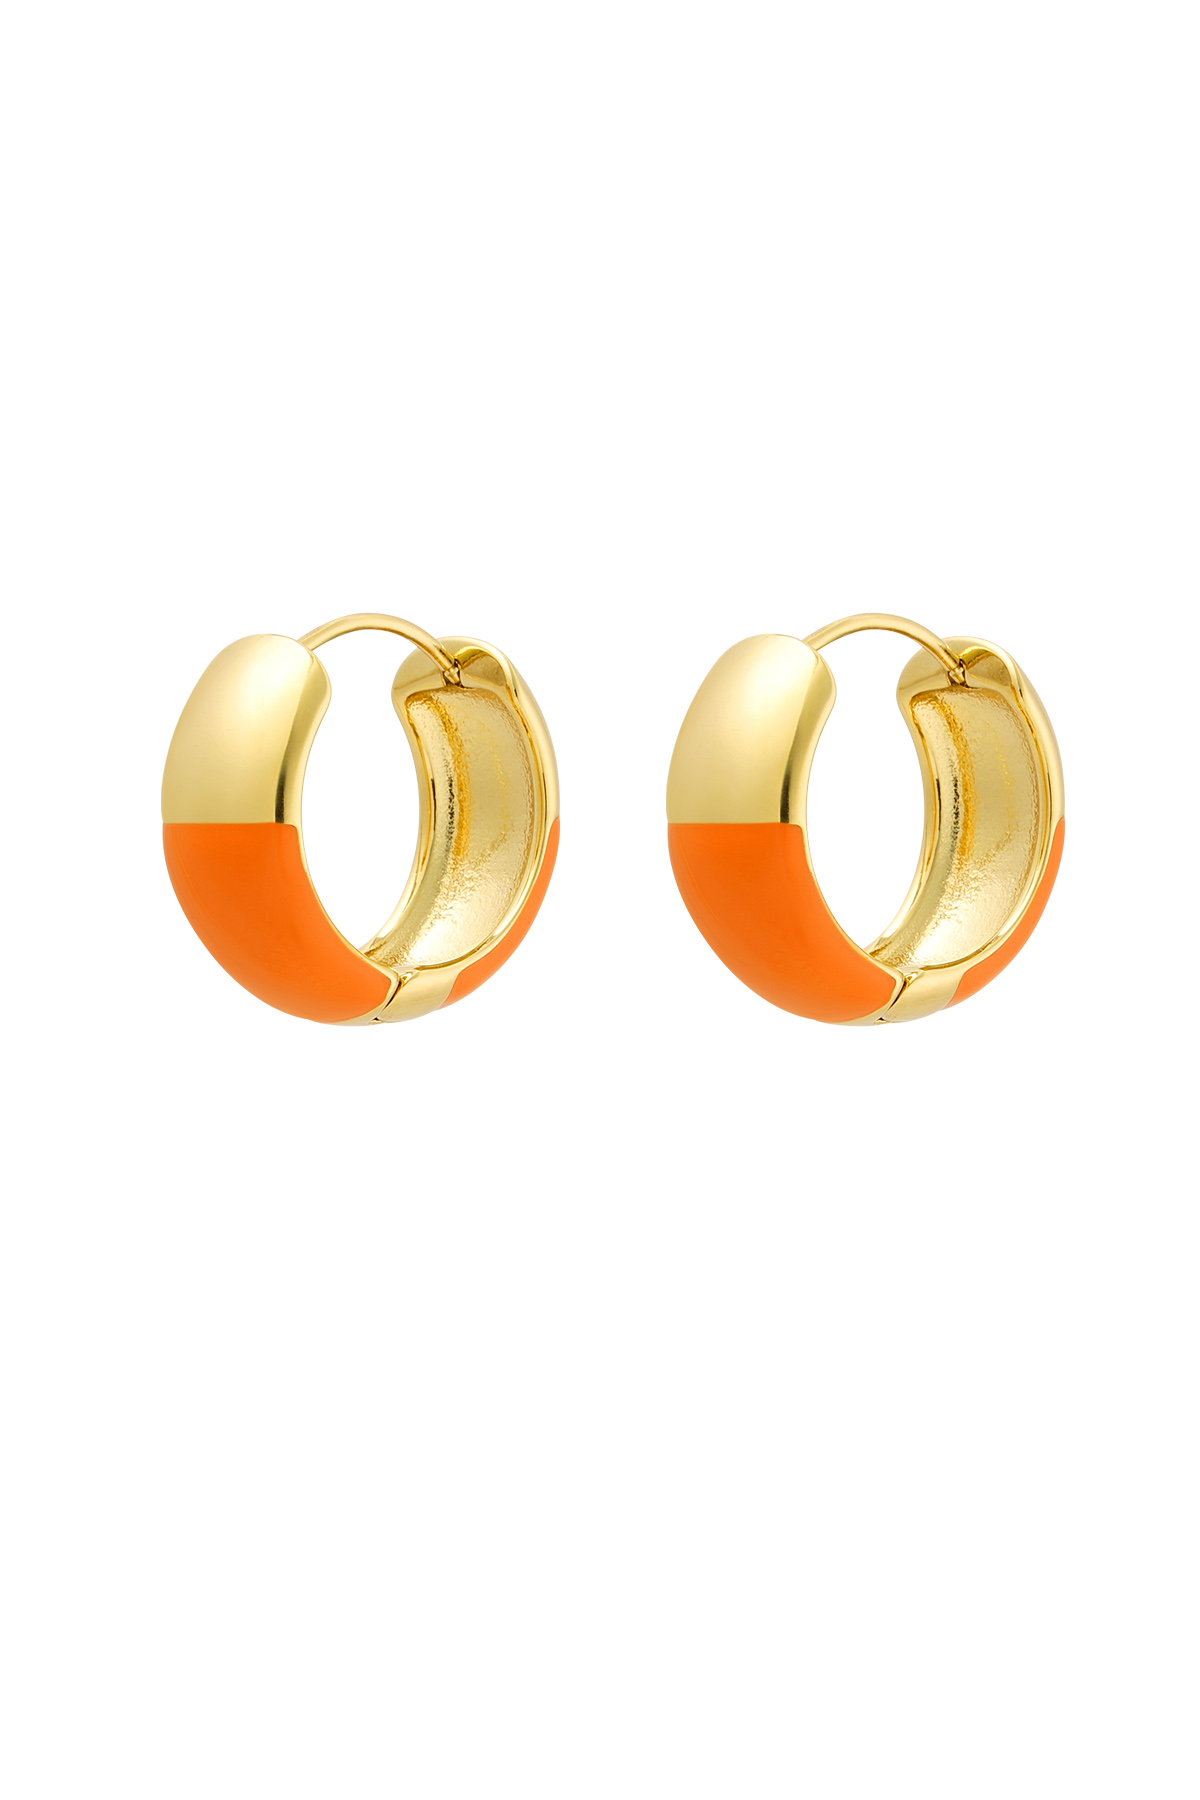 Orecchini mezzo colore - Acciaio inossidabile arancione e oro h5 